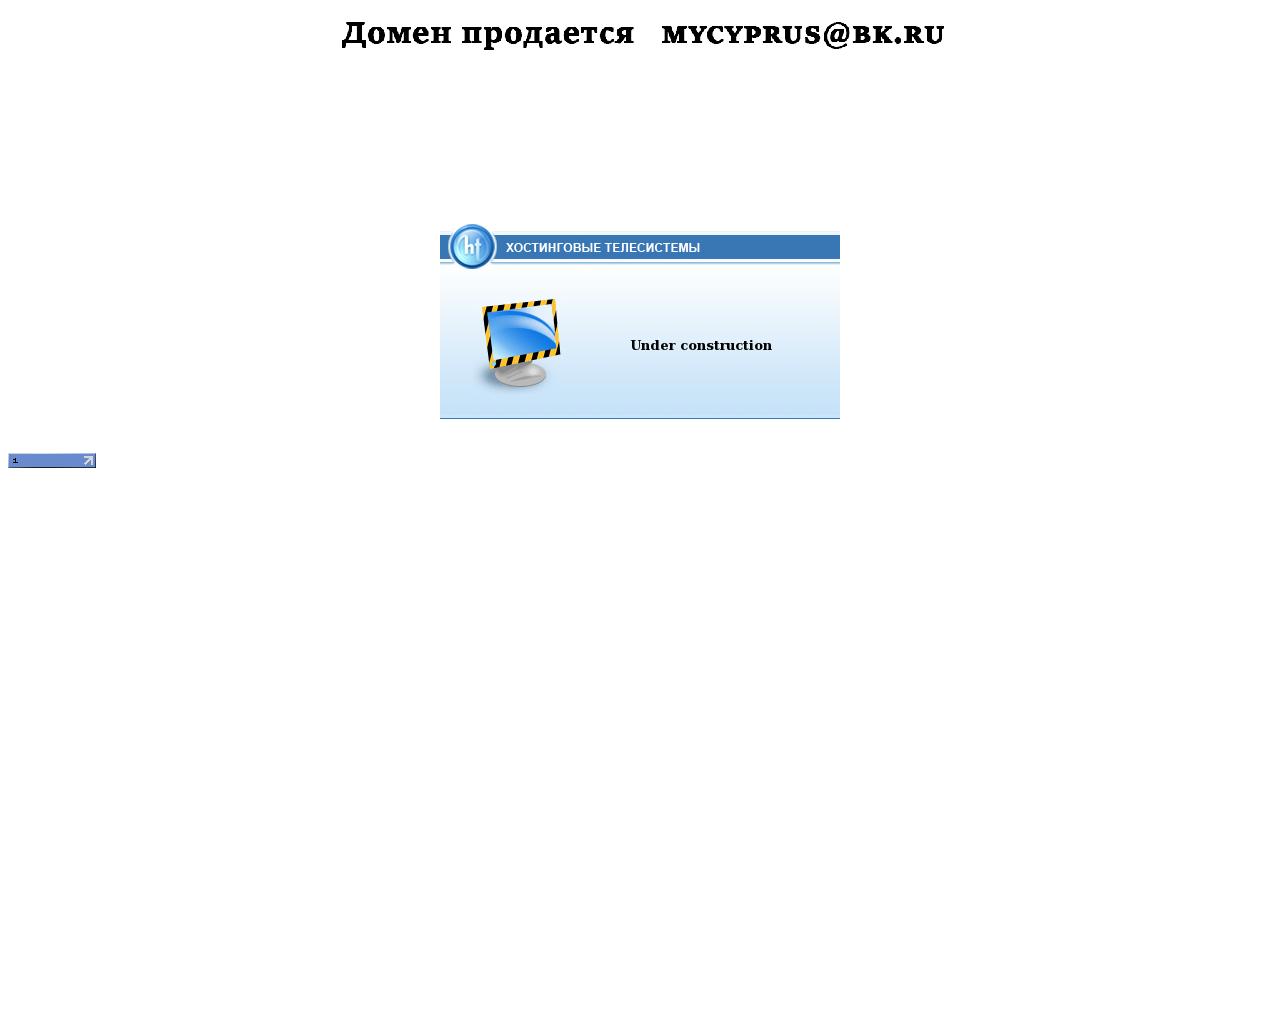 Изображение сайта ruscobank.ru в разрешении 1280x1024